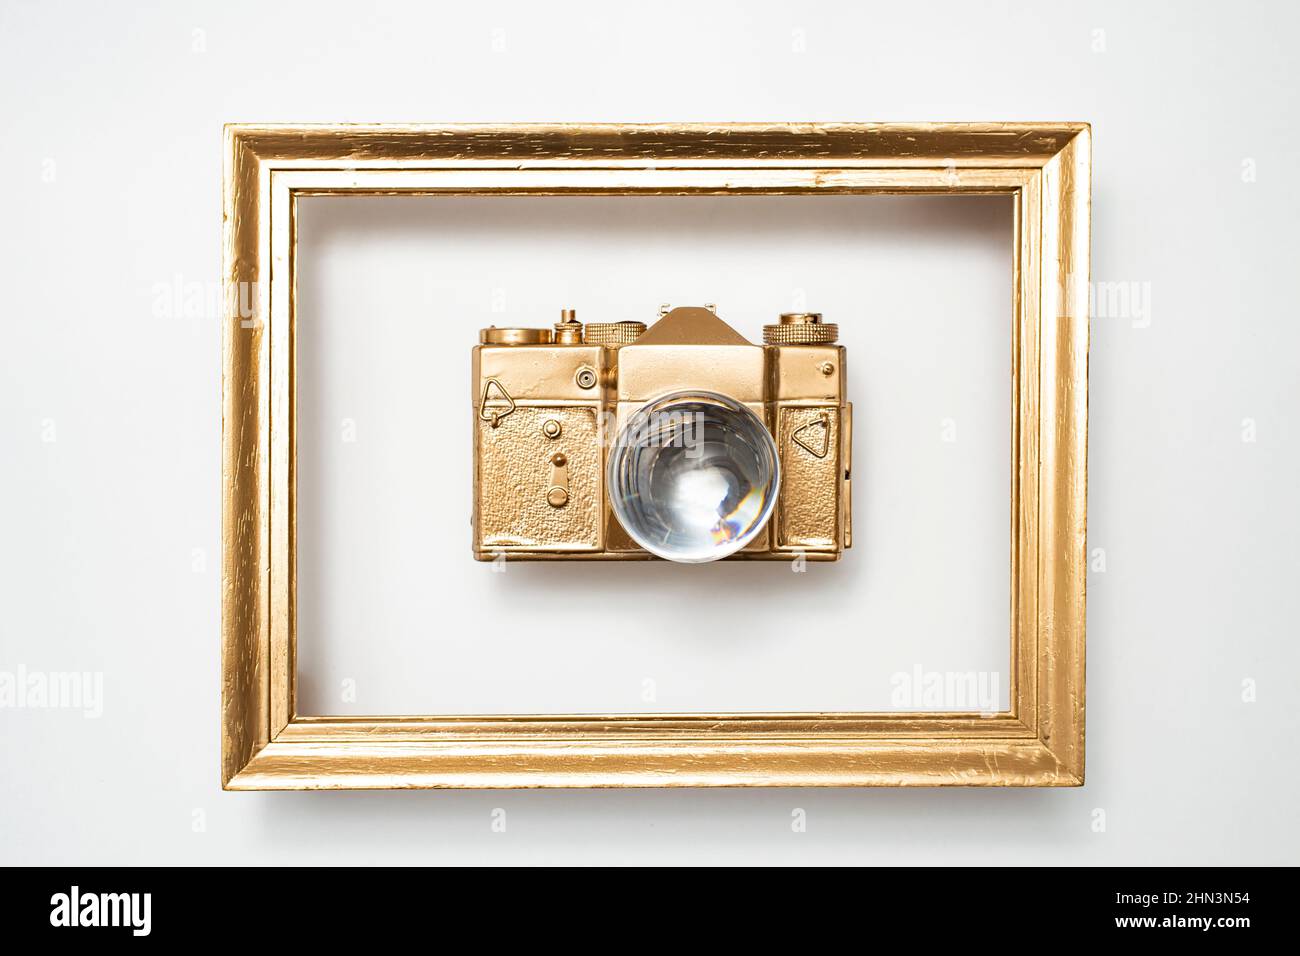 Appareil photo doré dans un cadre doré, avec une boule d'objectif au lieu  de l'objectif de l'appareil photo. Faible profondeur de champ Photo Stock -  Alamy